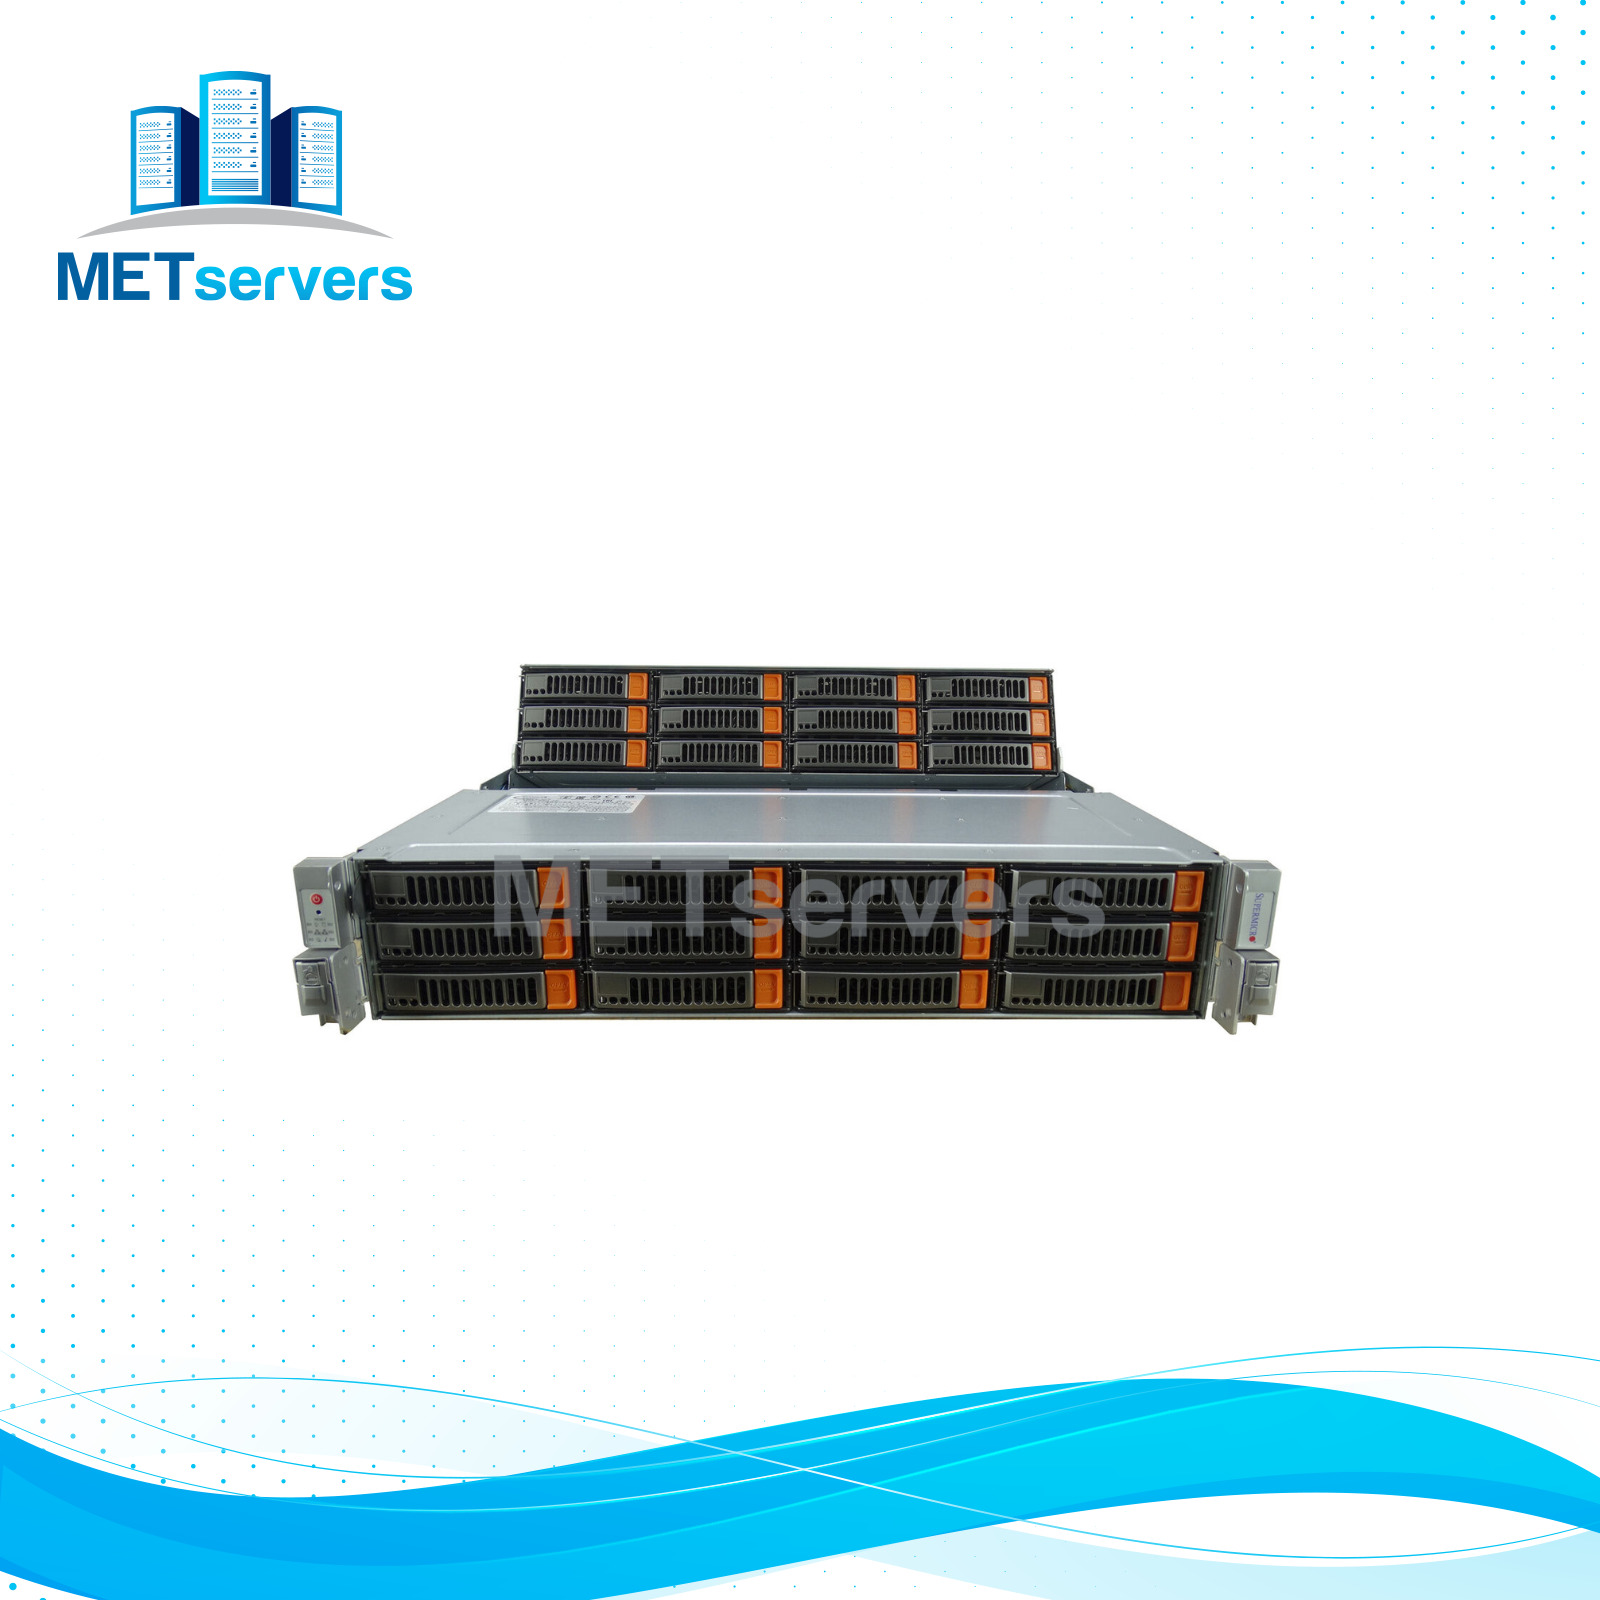 Supermicro Storage 6028R-E1CR24N 2x E5-2640 V4 10C 128GB 24x Trays Rails